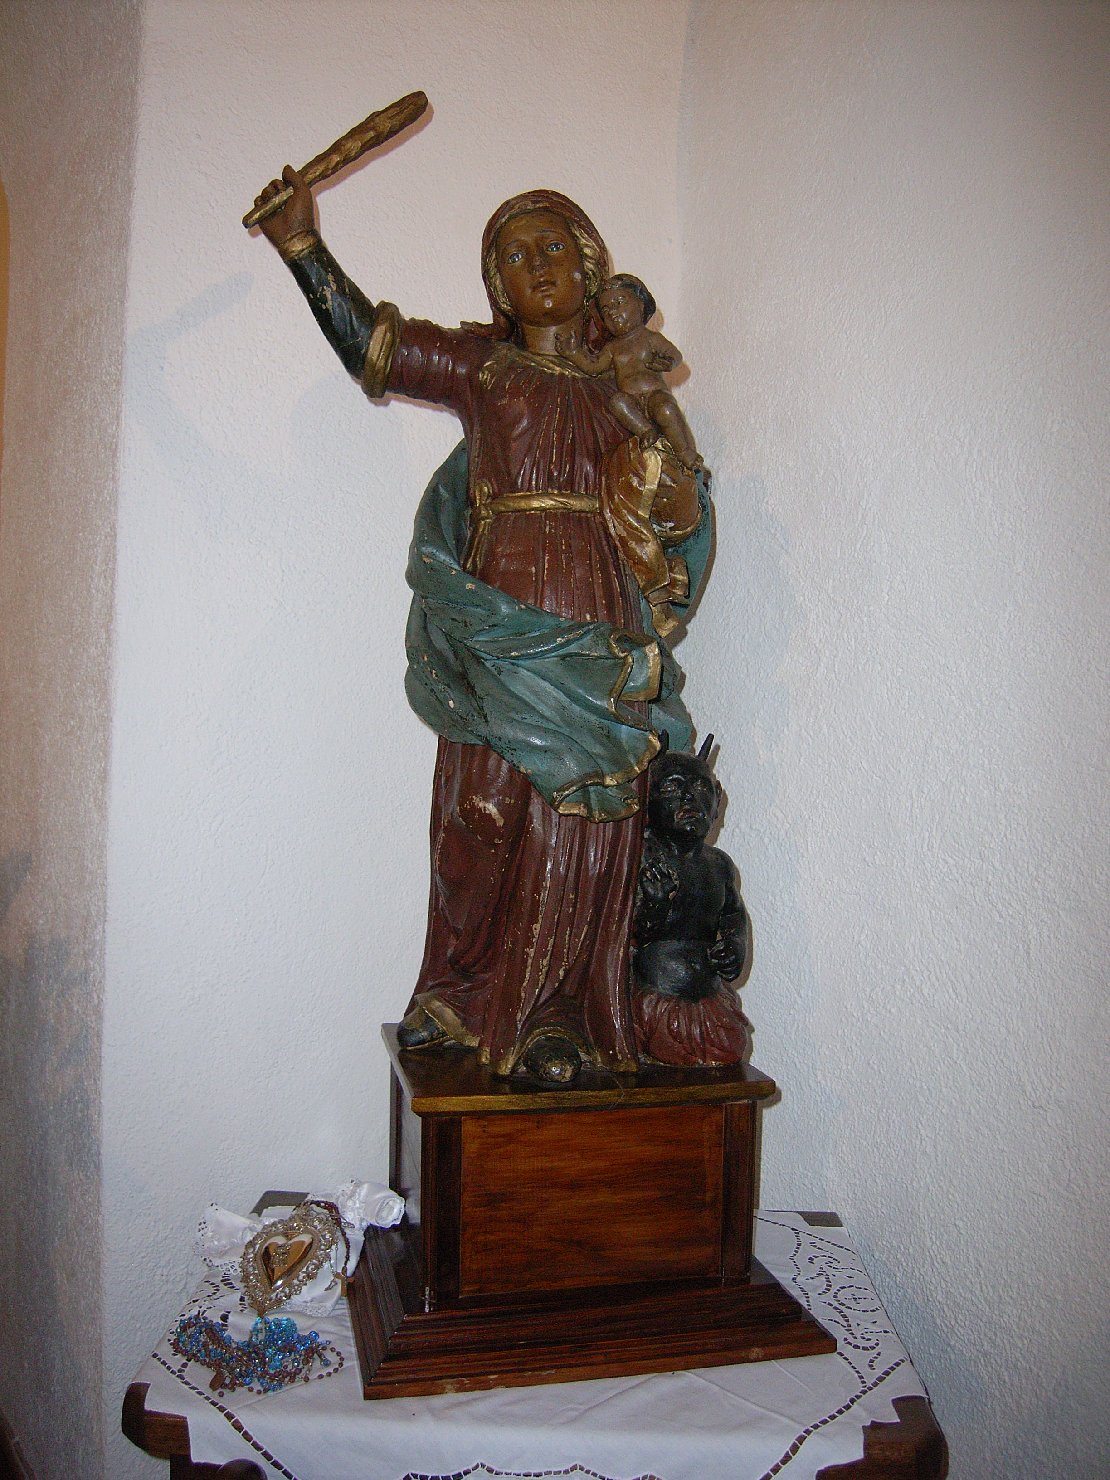 Nostra signora del soccorso, madonna con bambino (statua)